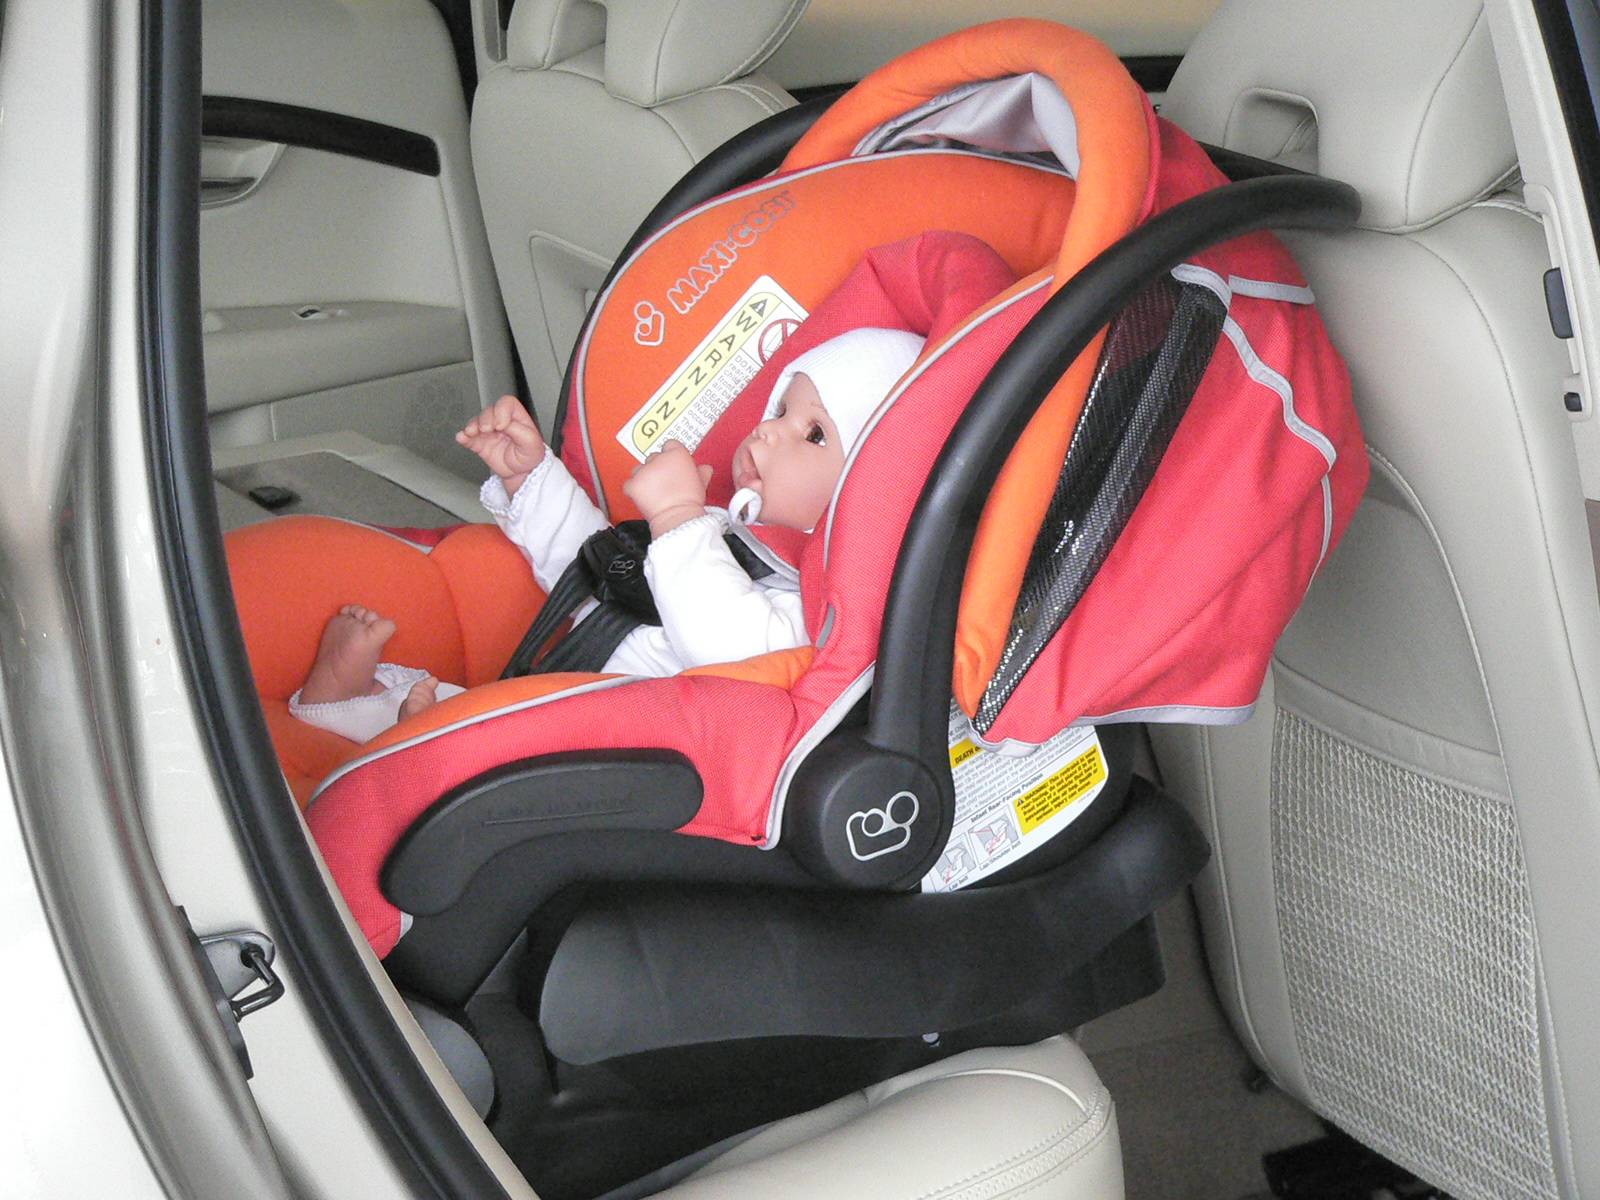 Правила перевоза детей в автомобиле в 2023 году: основные положения